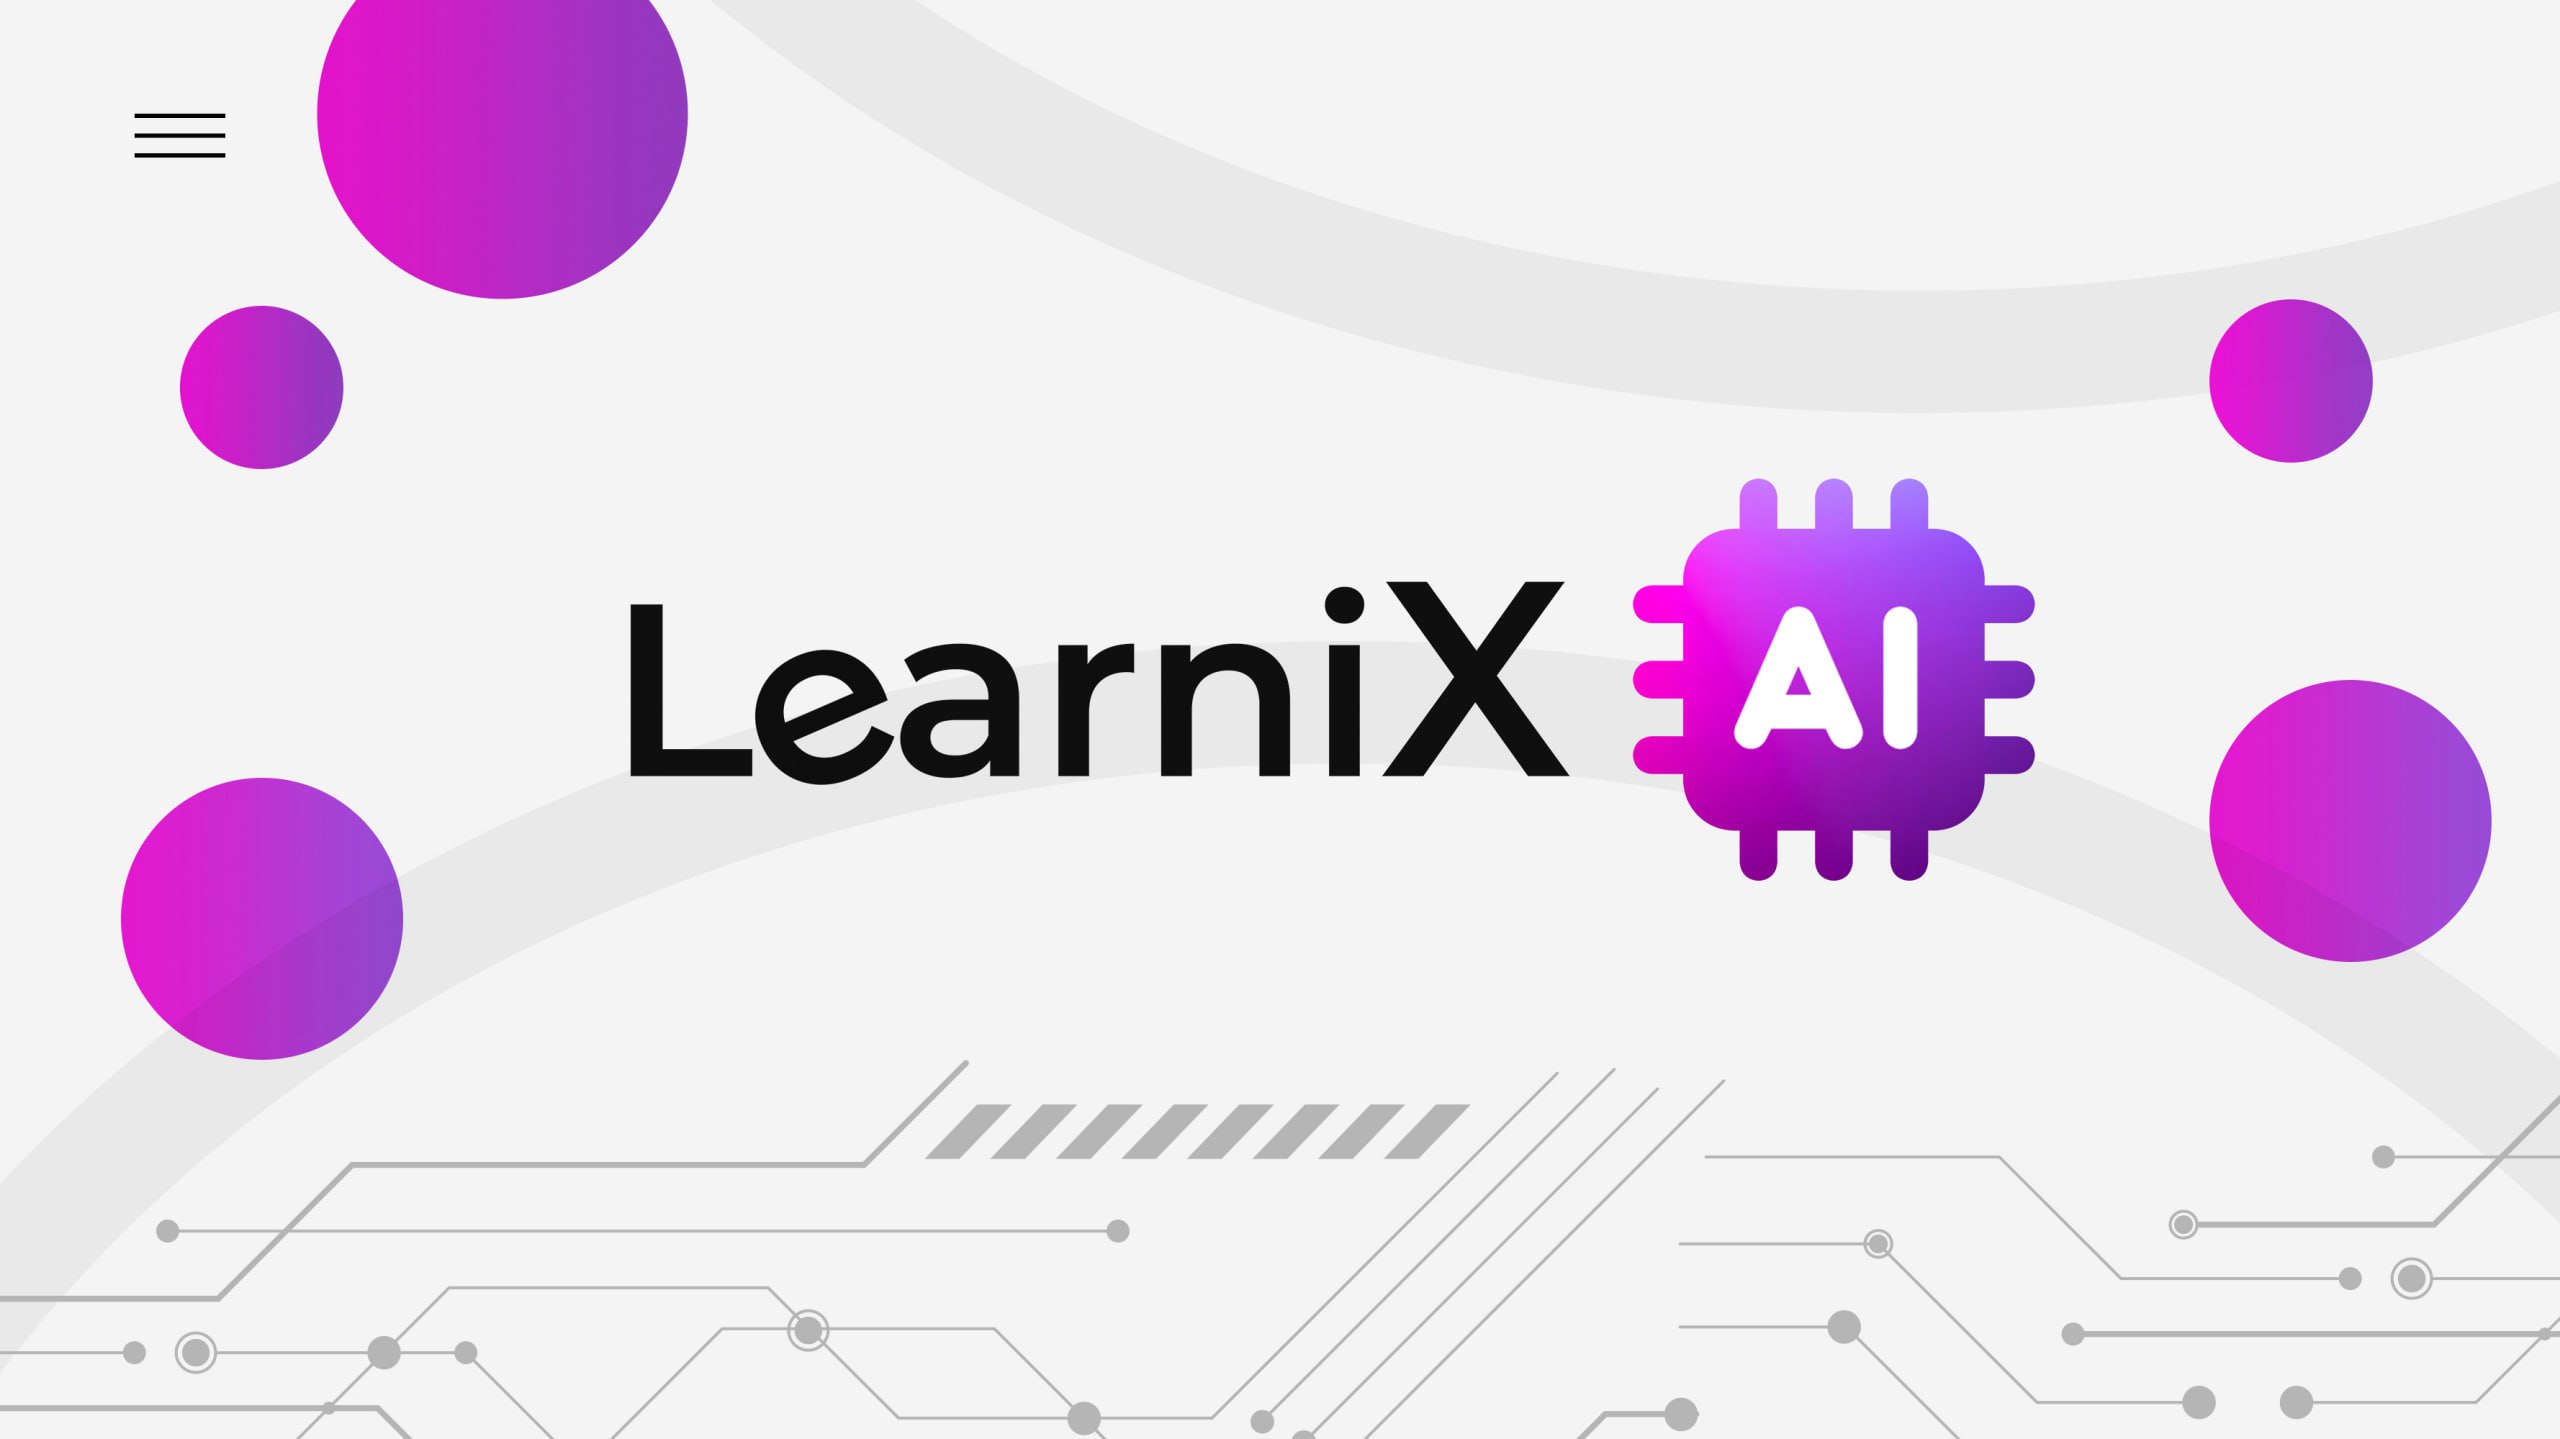 LearniX AI